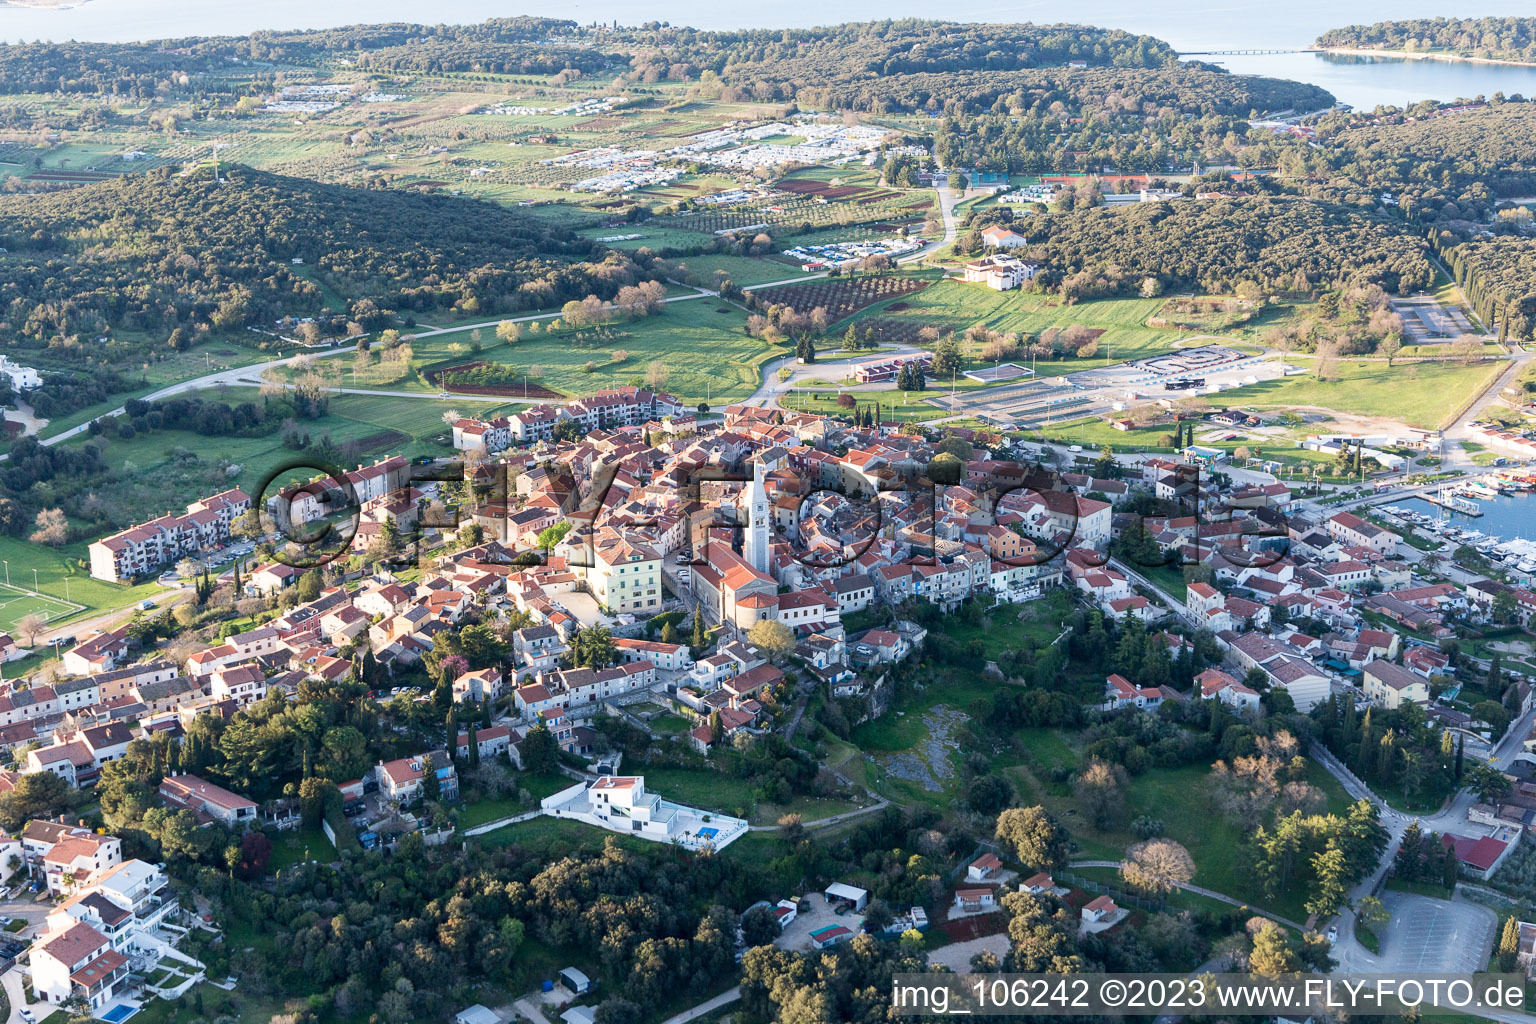 Stancija Valkanela dans le département Istrie, Croatie du point de vue du drone